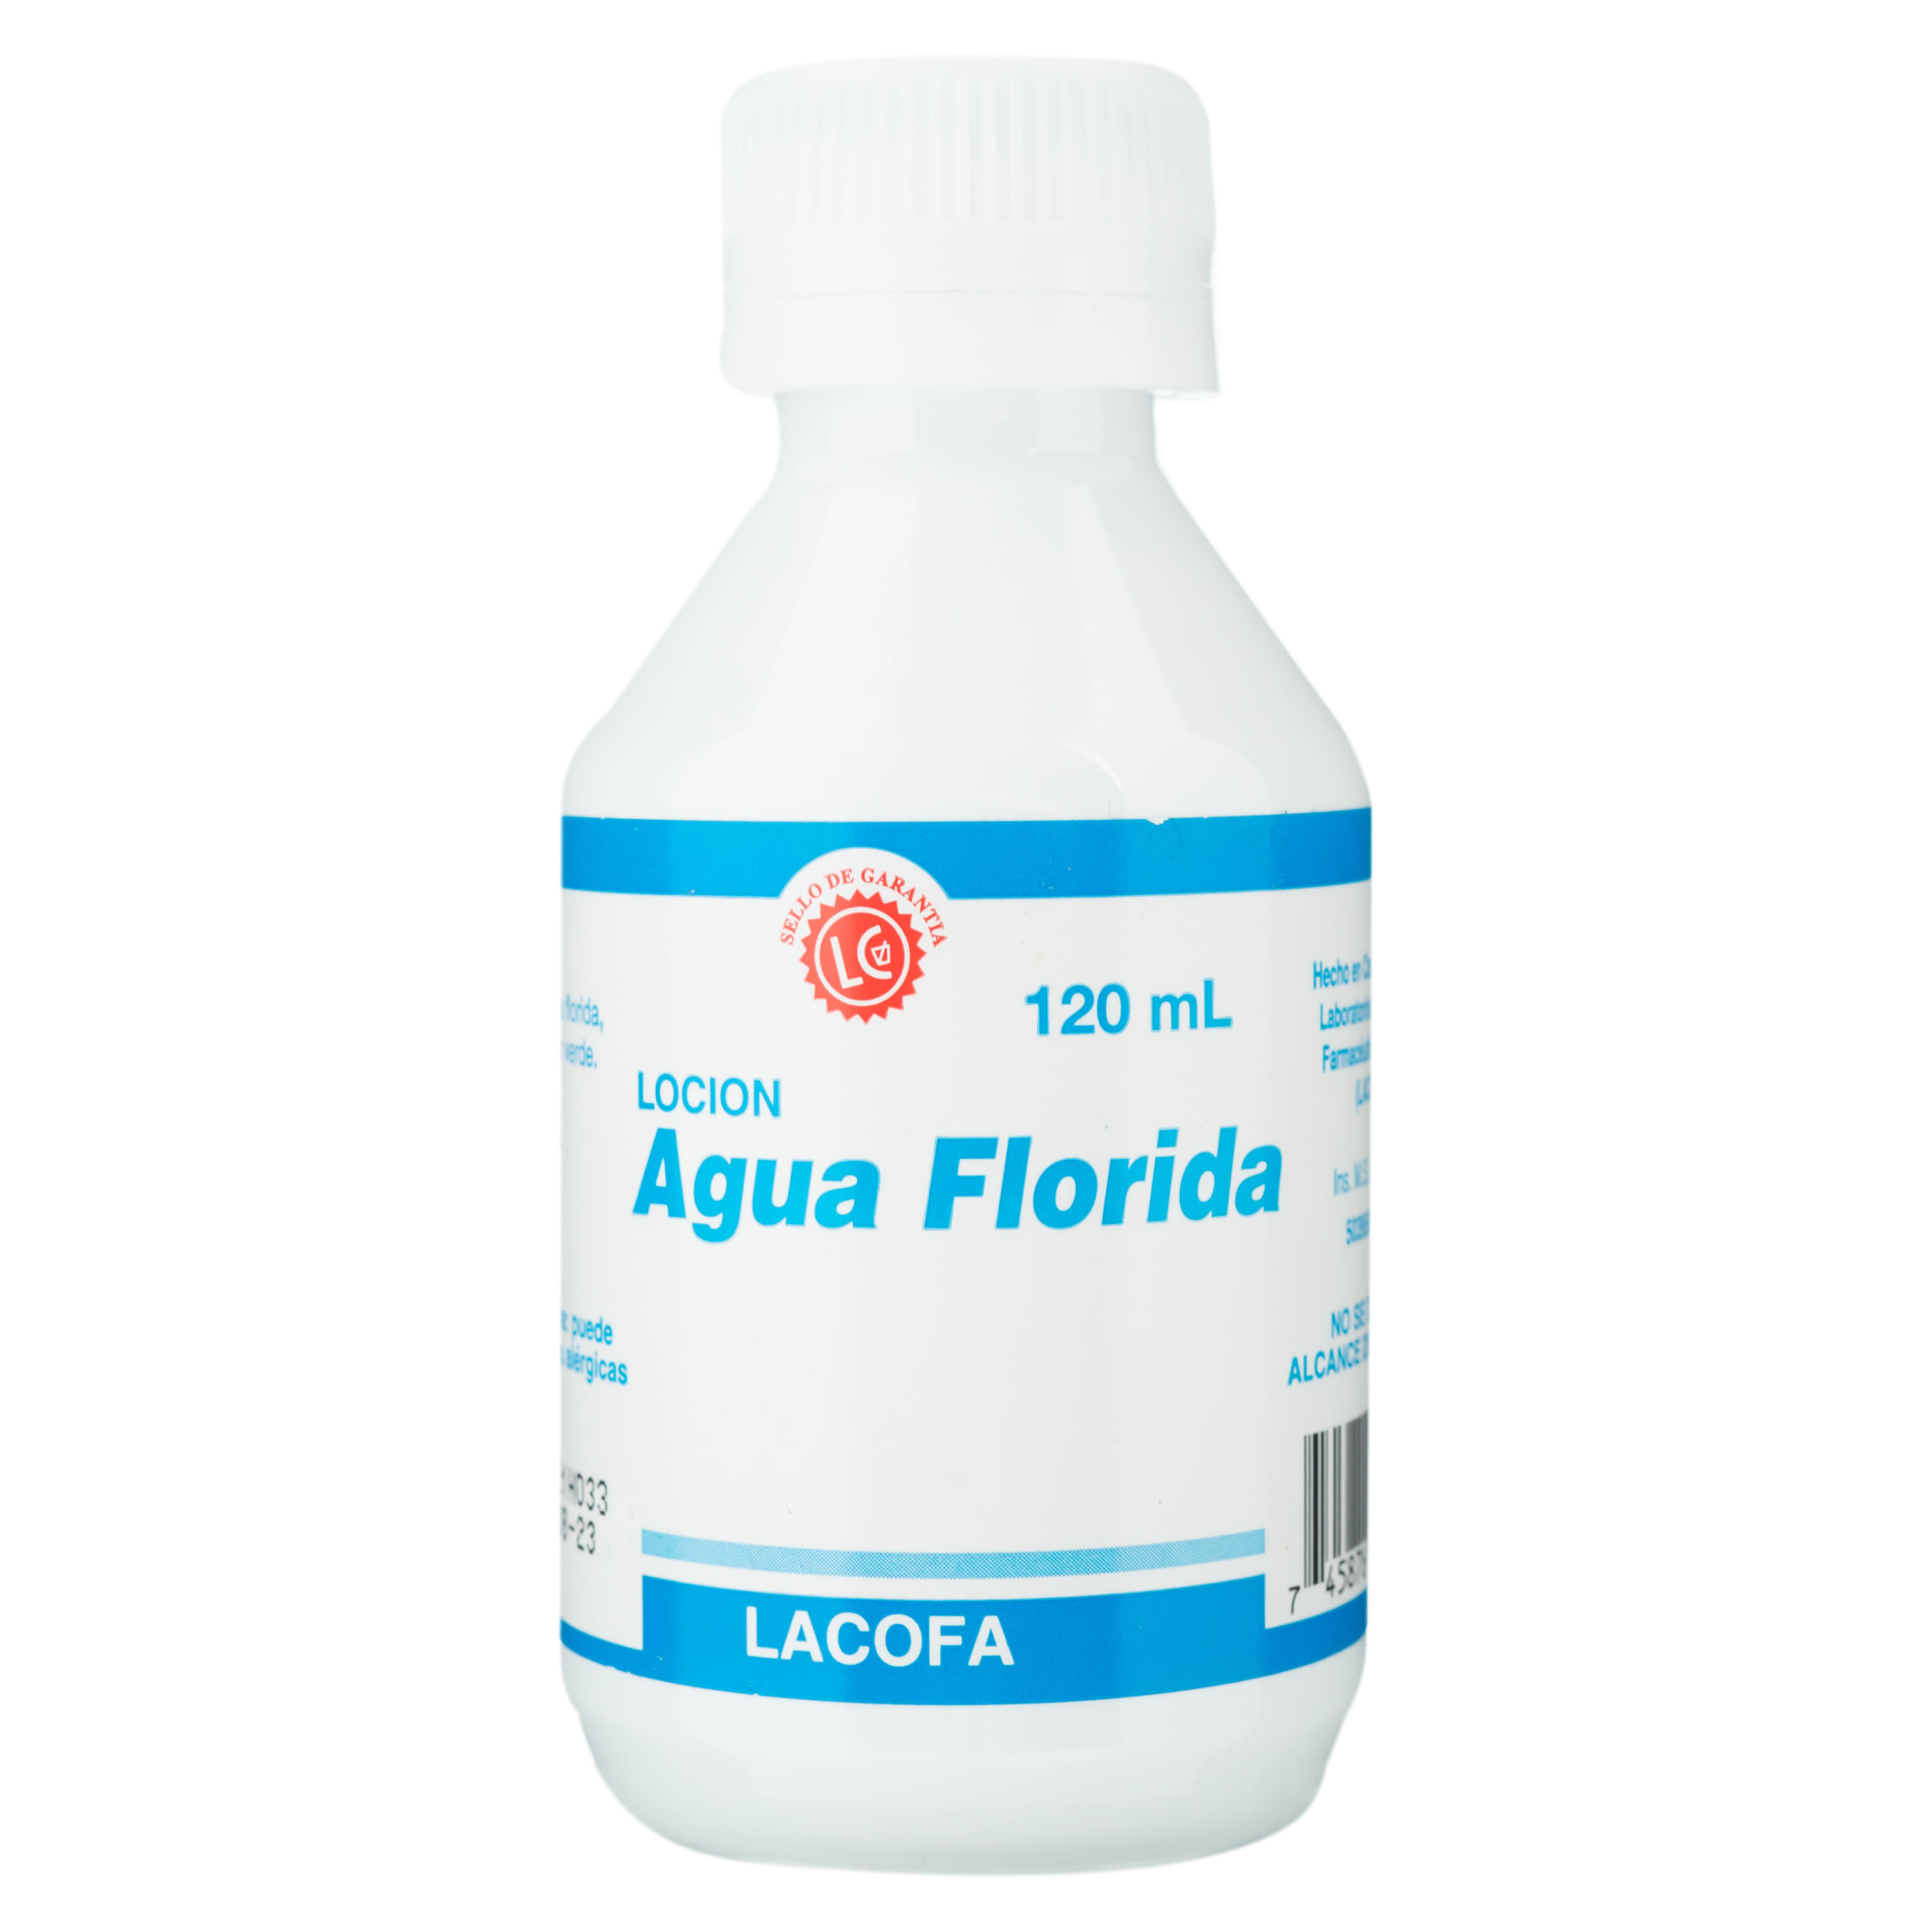 Agua Florida Lacofa -120 ml